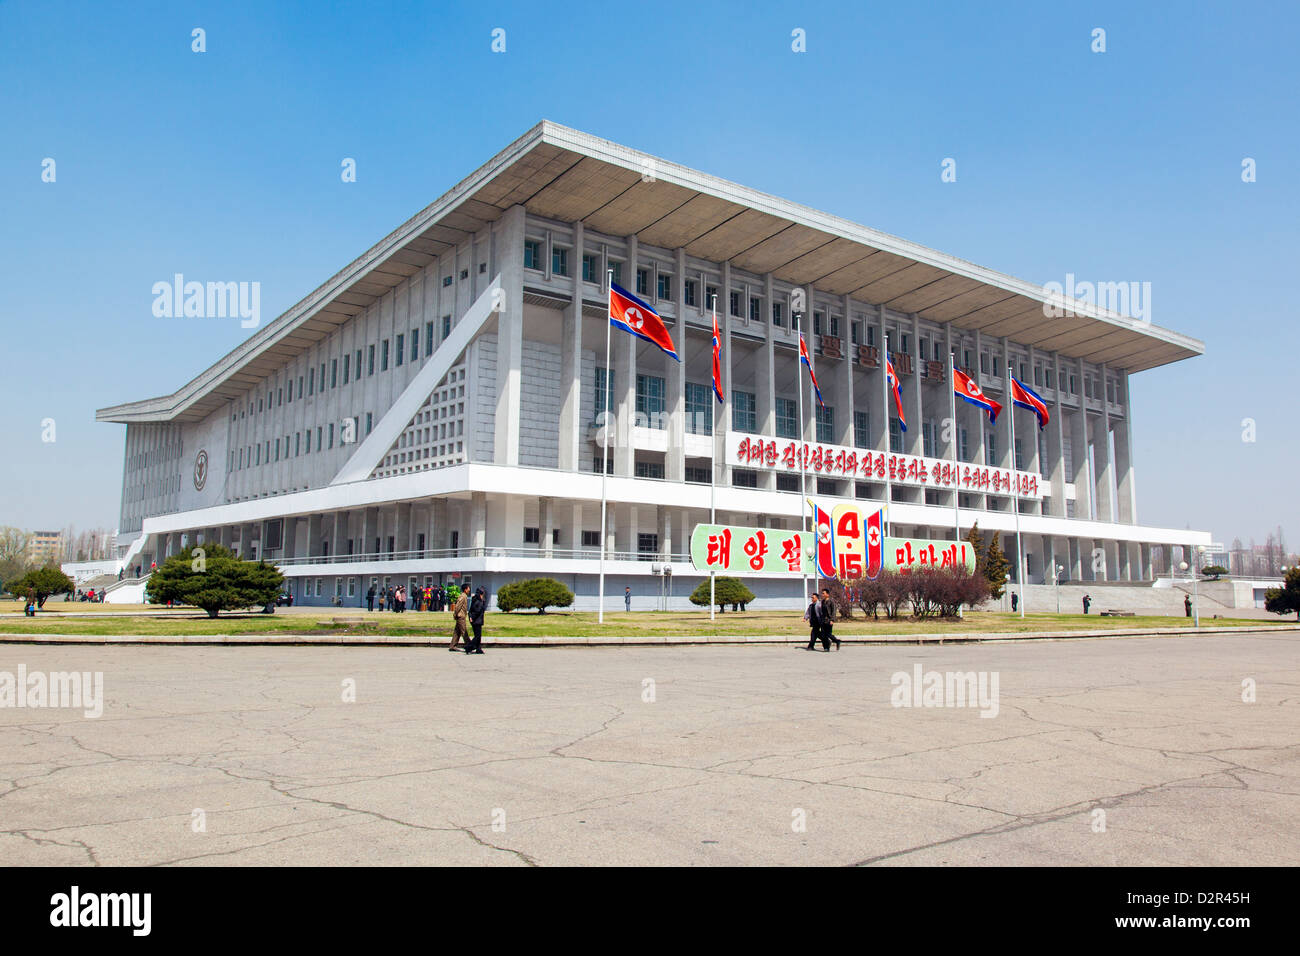 Estadio deportivo cubierto, Pyongyang, República Popular Democrática de Corea (RPDC), Corea del Norte, Asia Foto de stock